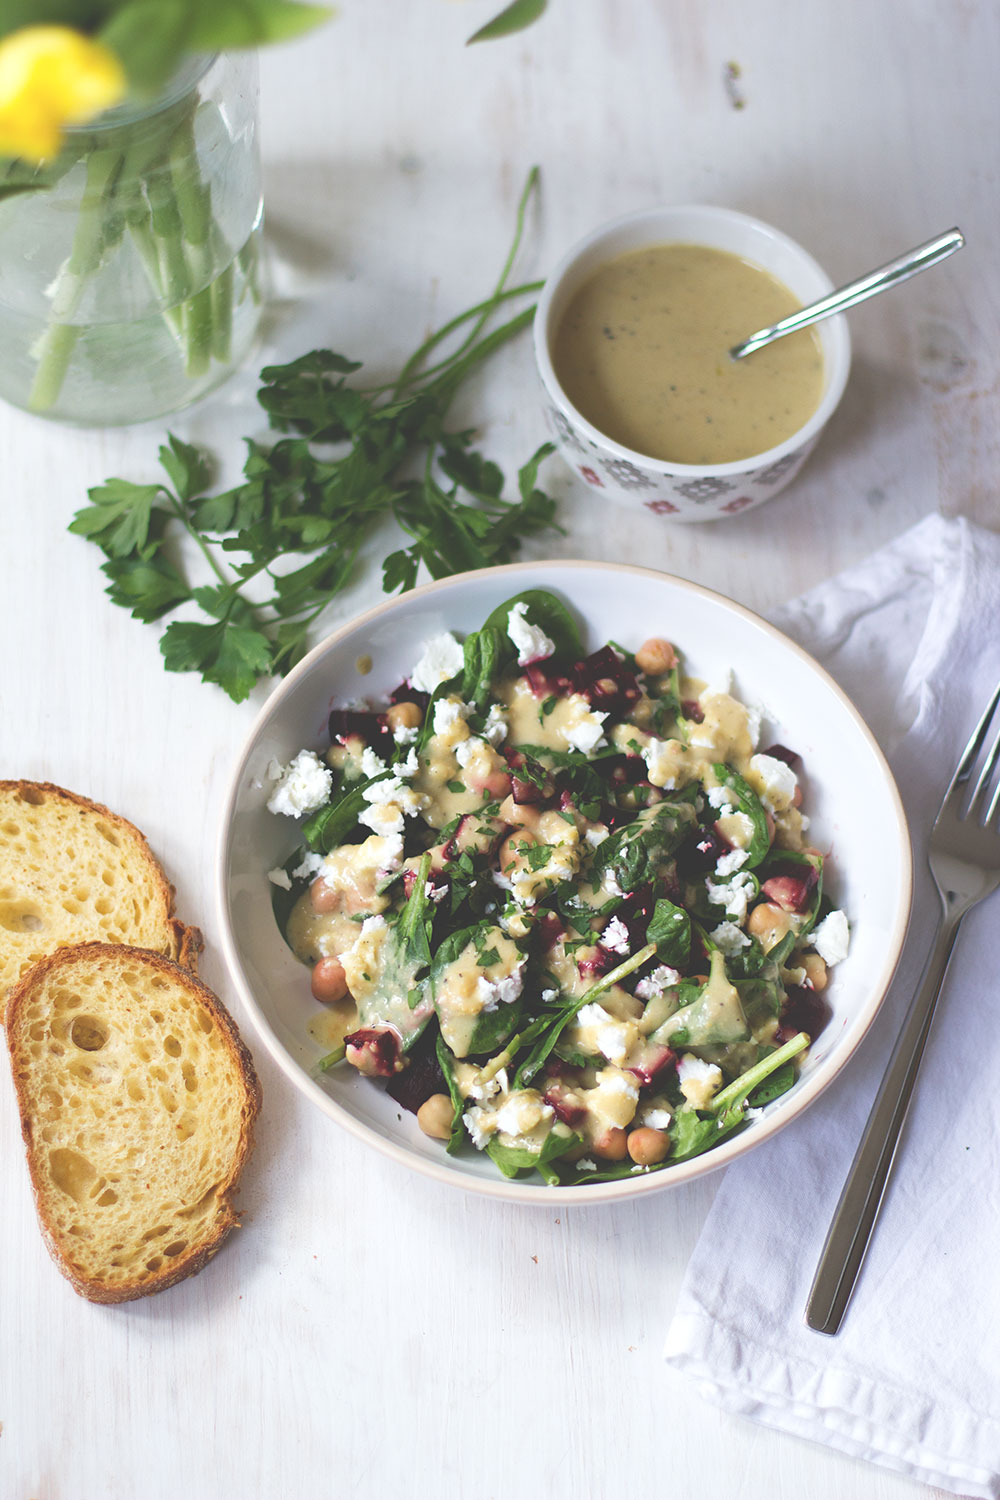 Rezept für frühlingsfrischen Spinat-Kichererbsen-Salat mit Rote Bete und cremigem Hummus-Dressing aus dem Thermomix von moeyskitchen.com